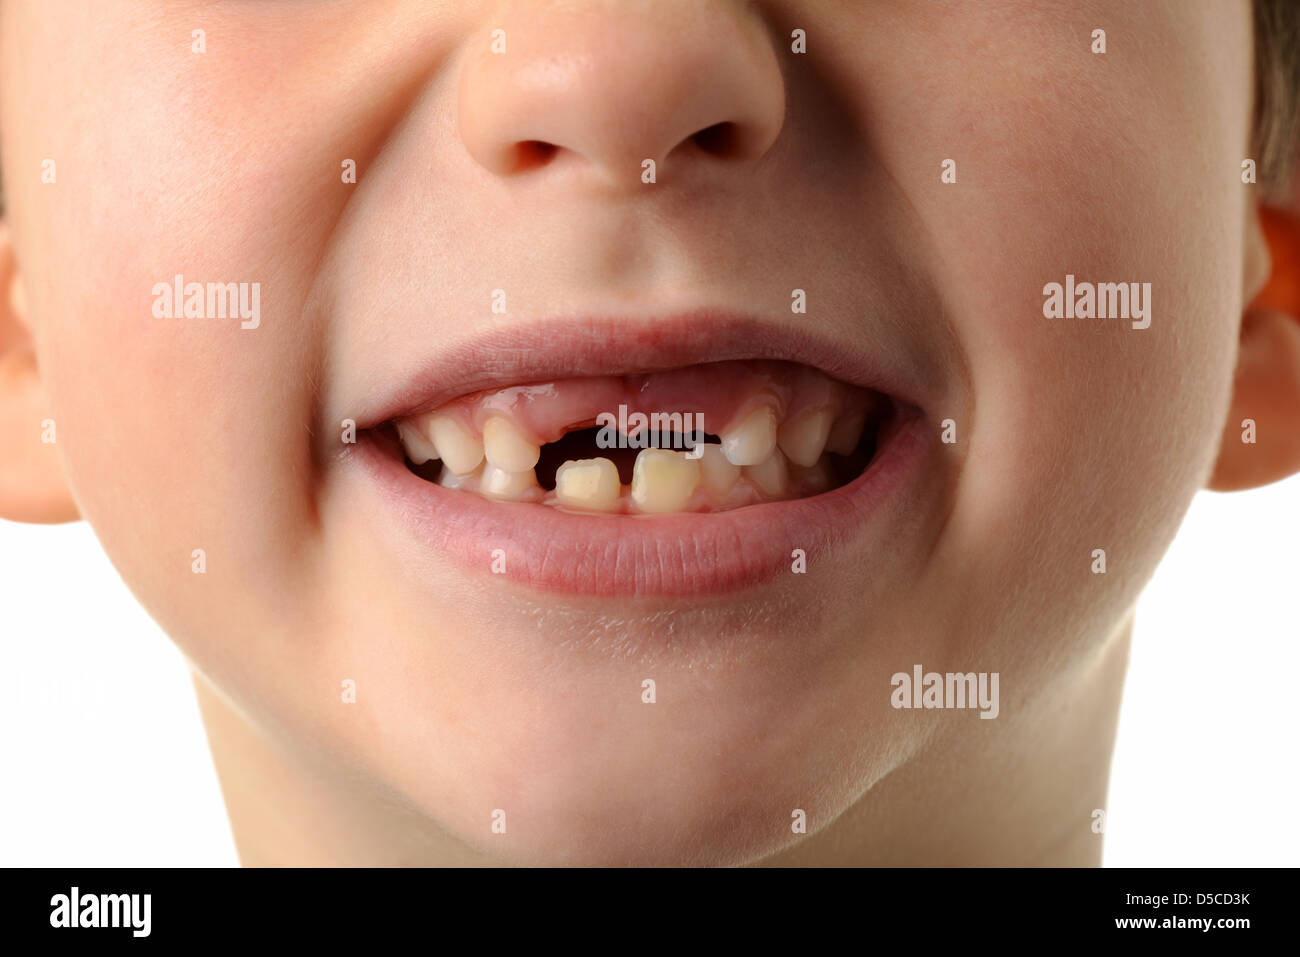 Niño falte a sus dos dientes superiores, cerca de la boca del niño mostrando sus dos primeros dientes faltantes. Foto de stock